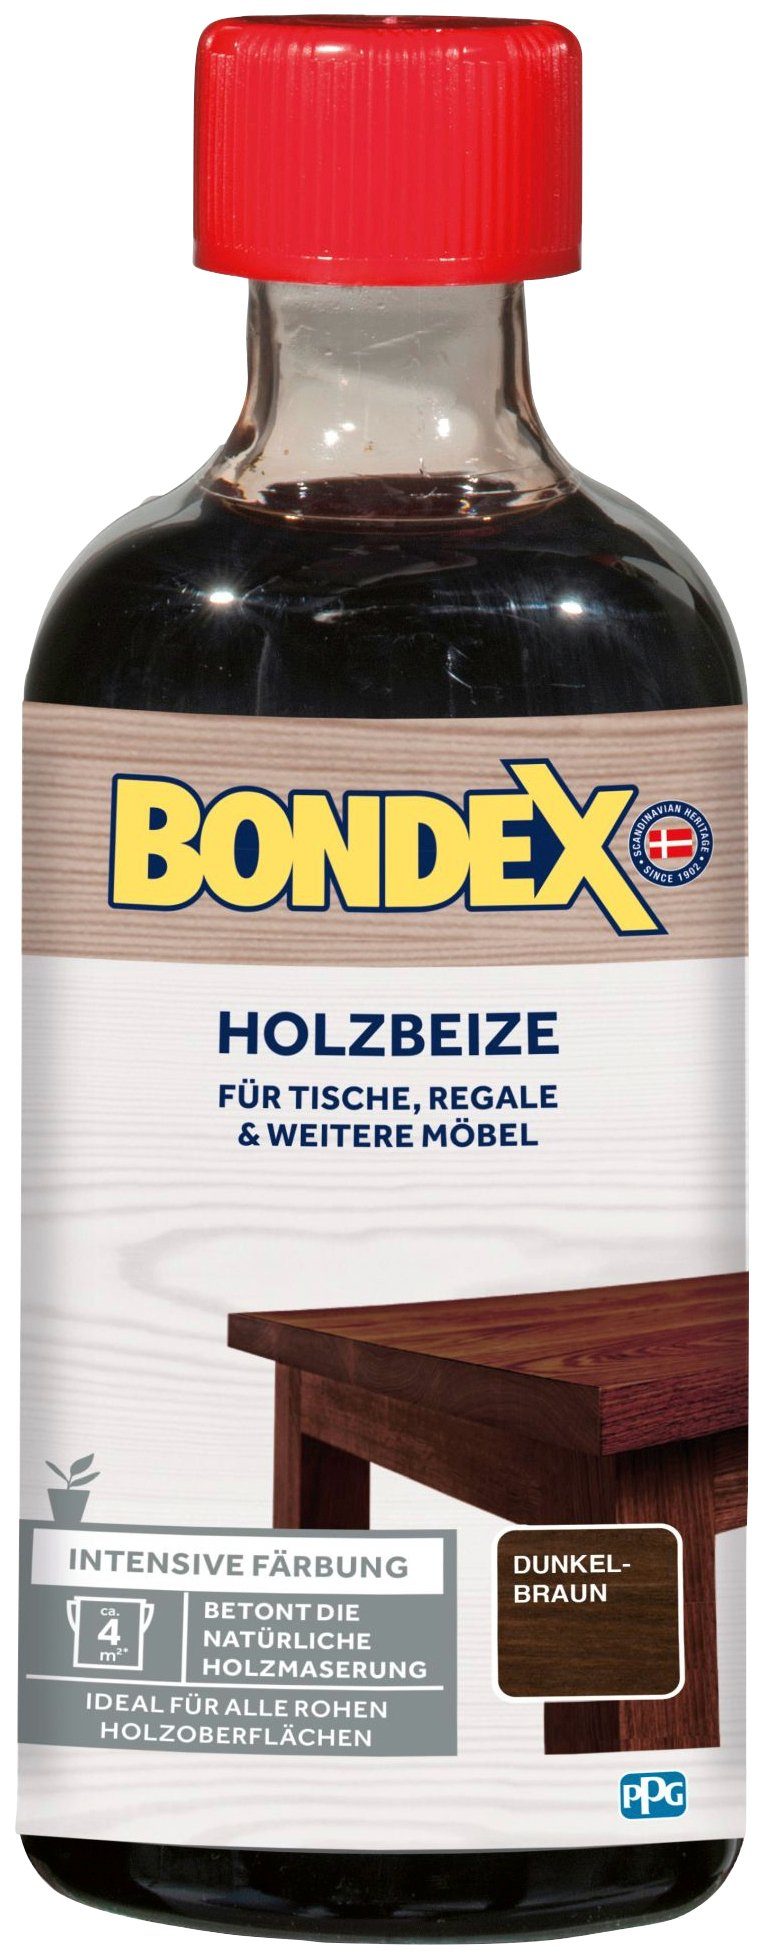 Bondex Lasur HOLZBEIZE, für Tische, Regale intensive 0,25 weitere & l Möbel, dunkelbraun Färbung